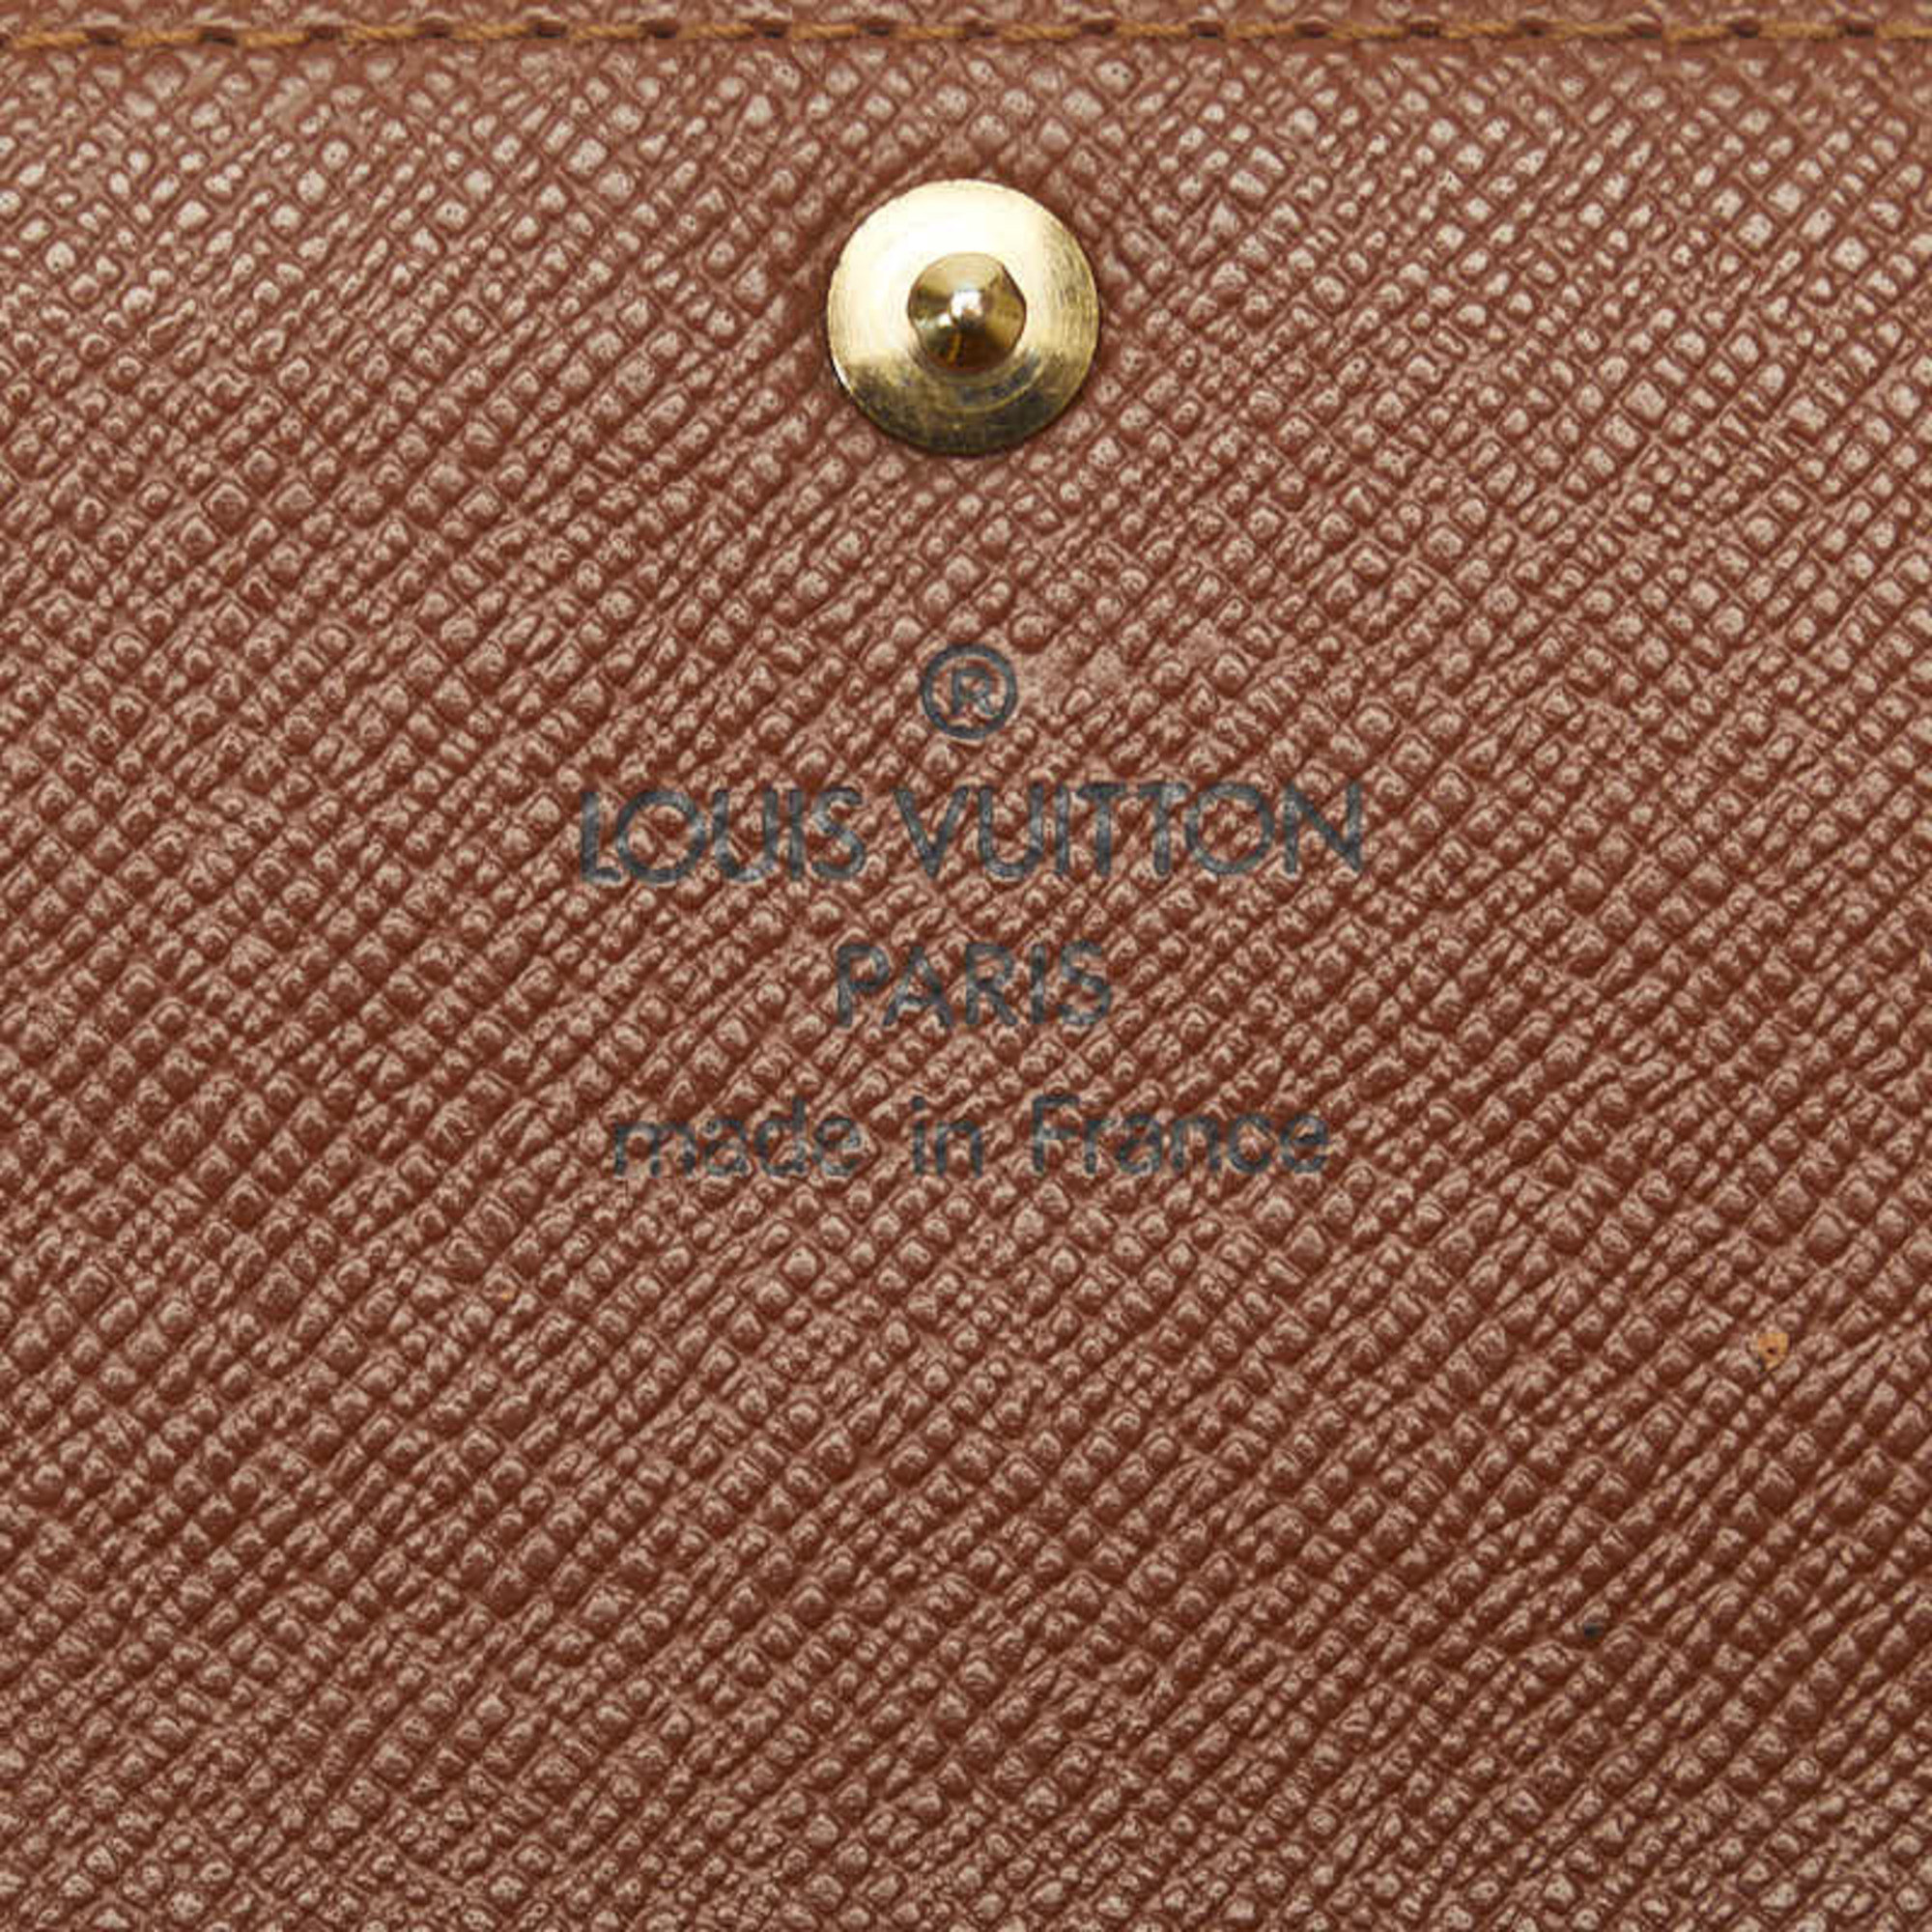 Louis Vuitton Monogram Multicle 6 Key Case M62630 Brown PVC Leather Women's LOUIS VUITTON